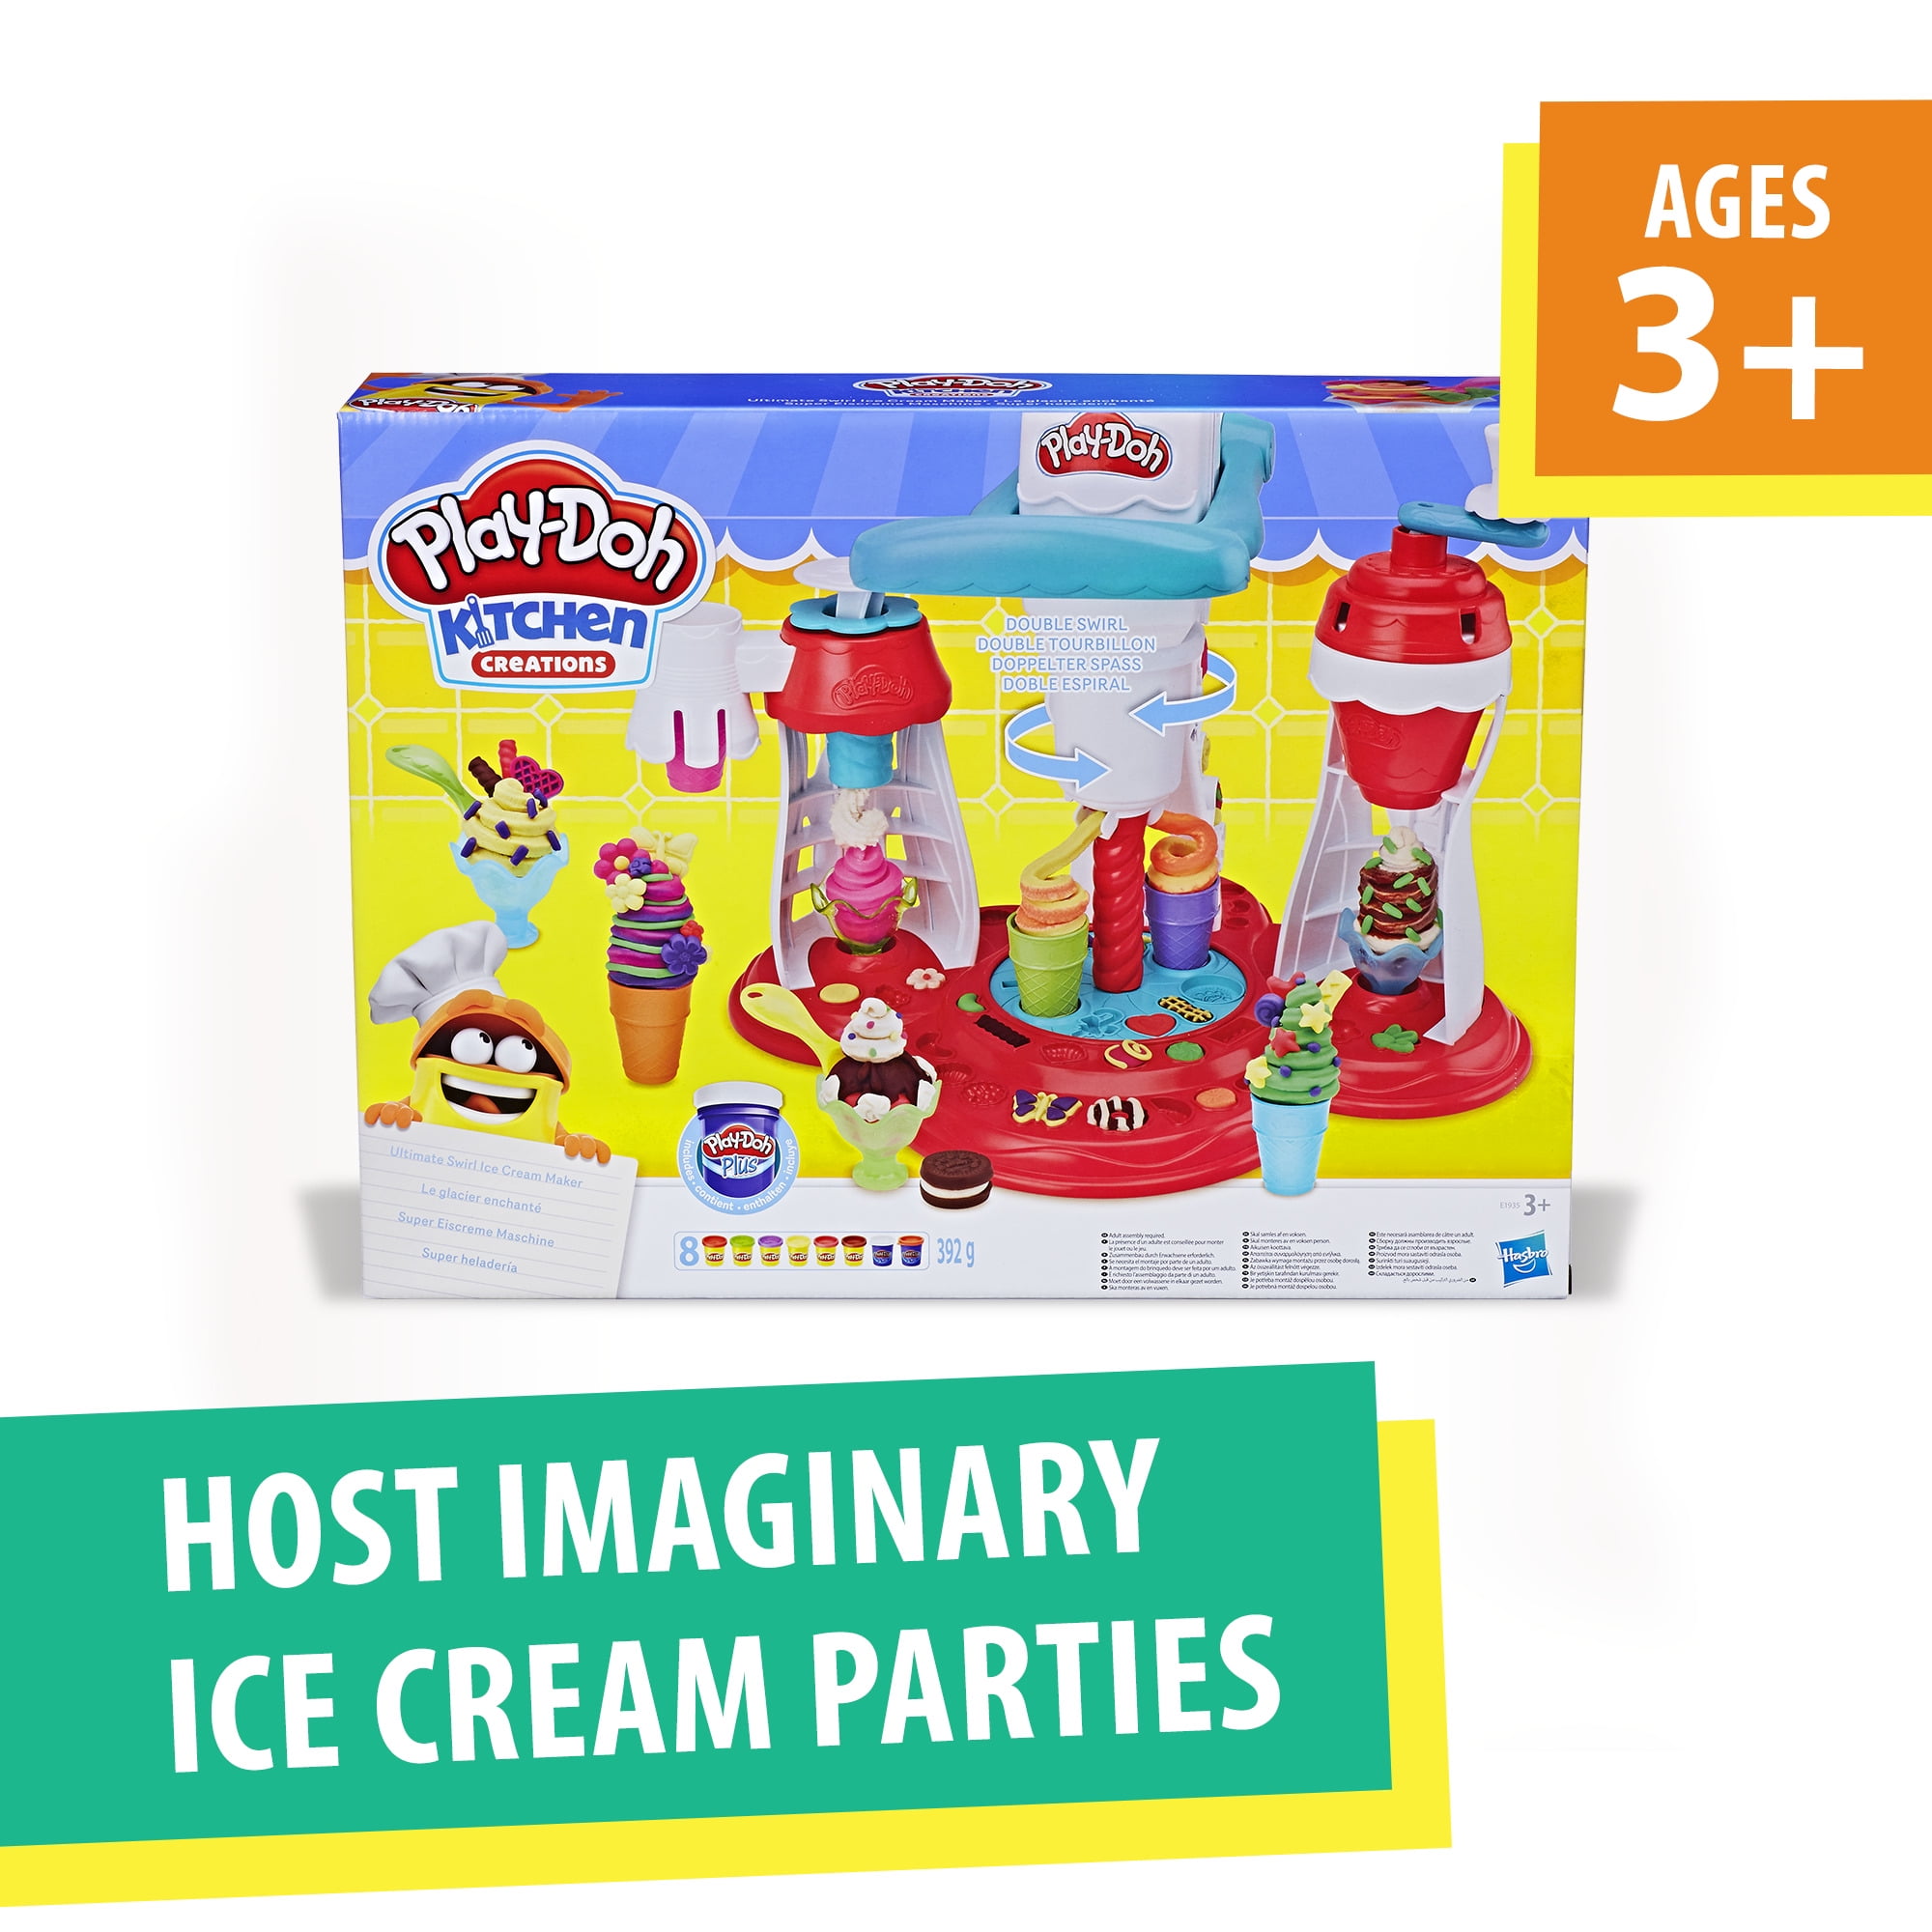  Kidtopus Playdough Kitchen Creations Ice Cream Playset